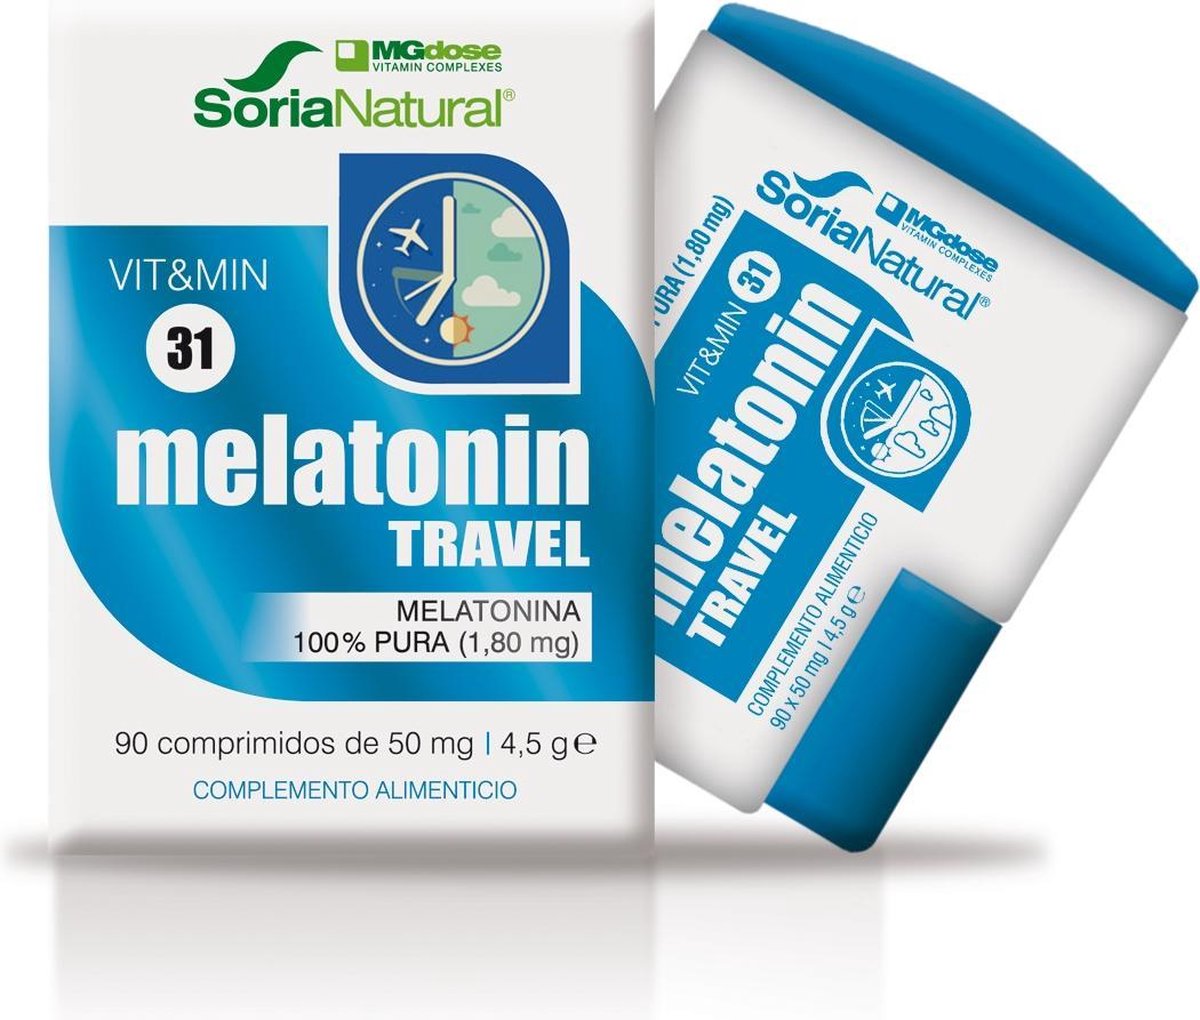 Soria Natural Melatonin Travel 100% Pura 90 Comprimidos